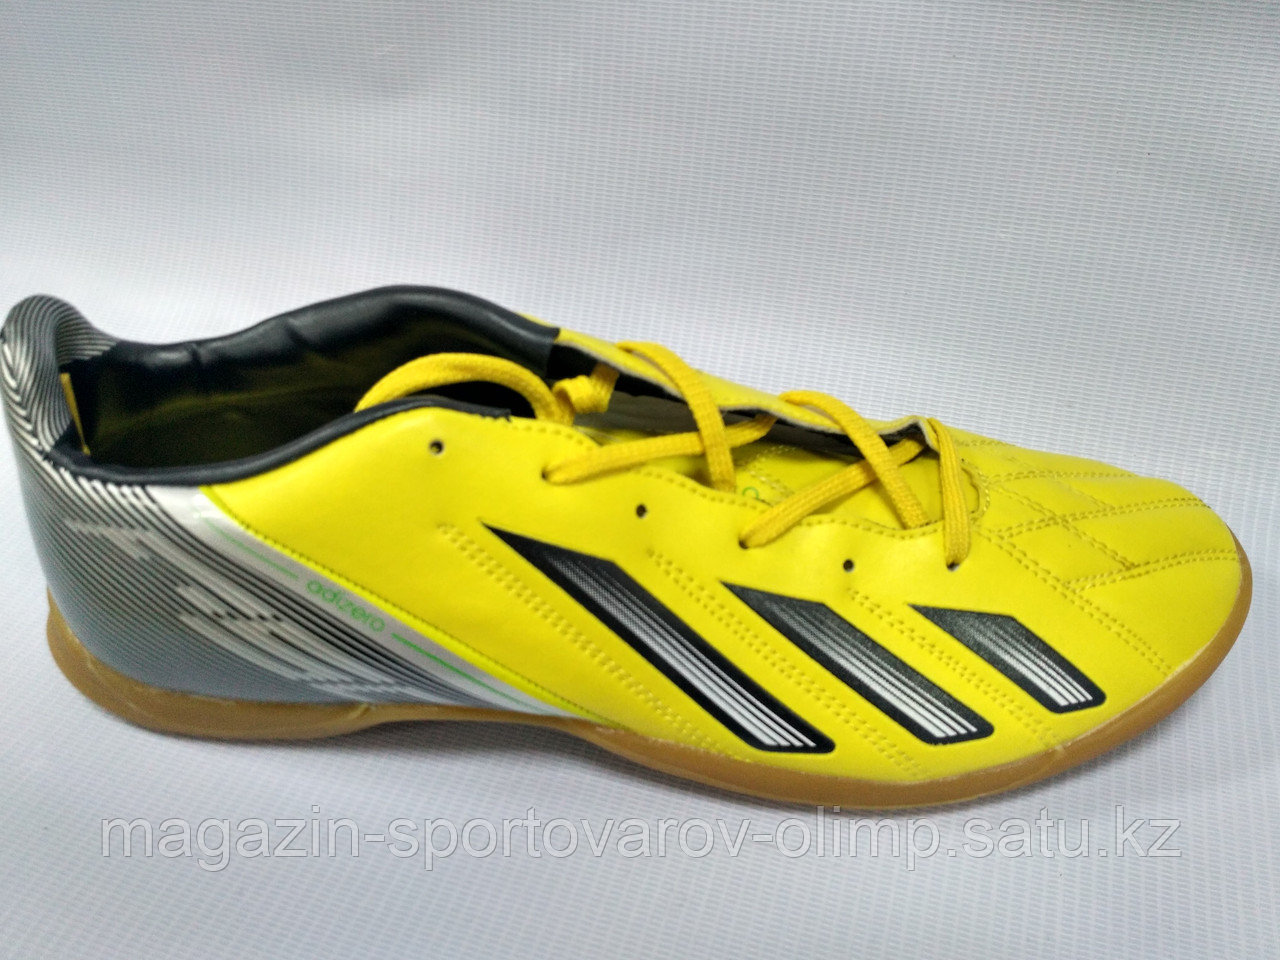 Обувь для футбола, шиповки, сороконожки  Adidas, 39 размер